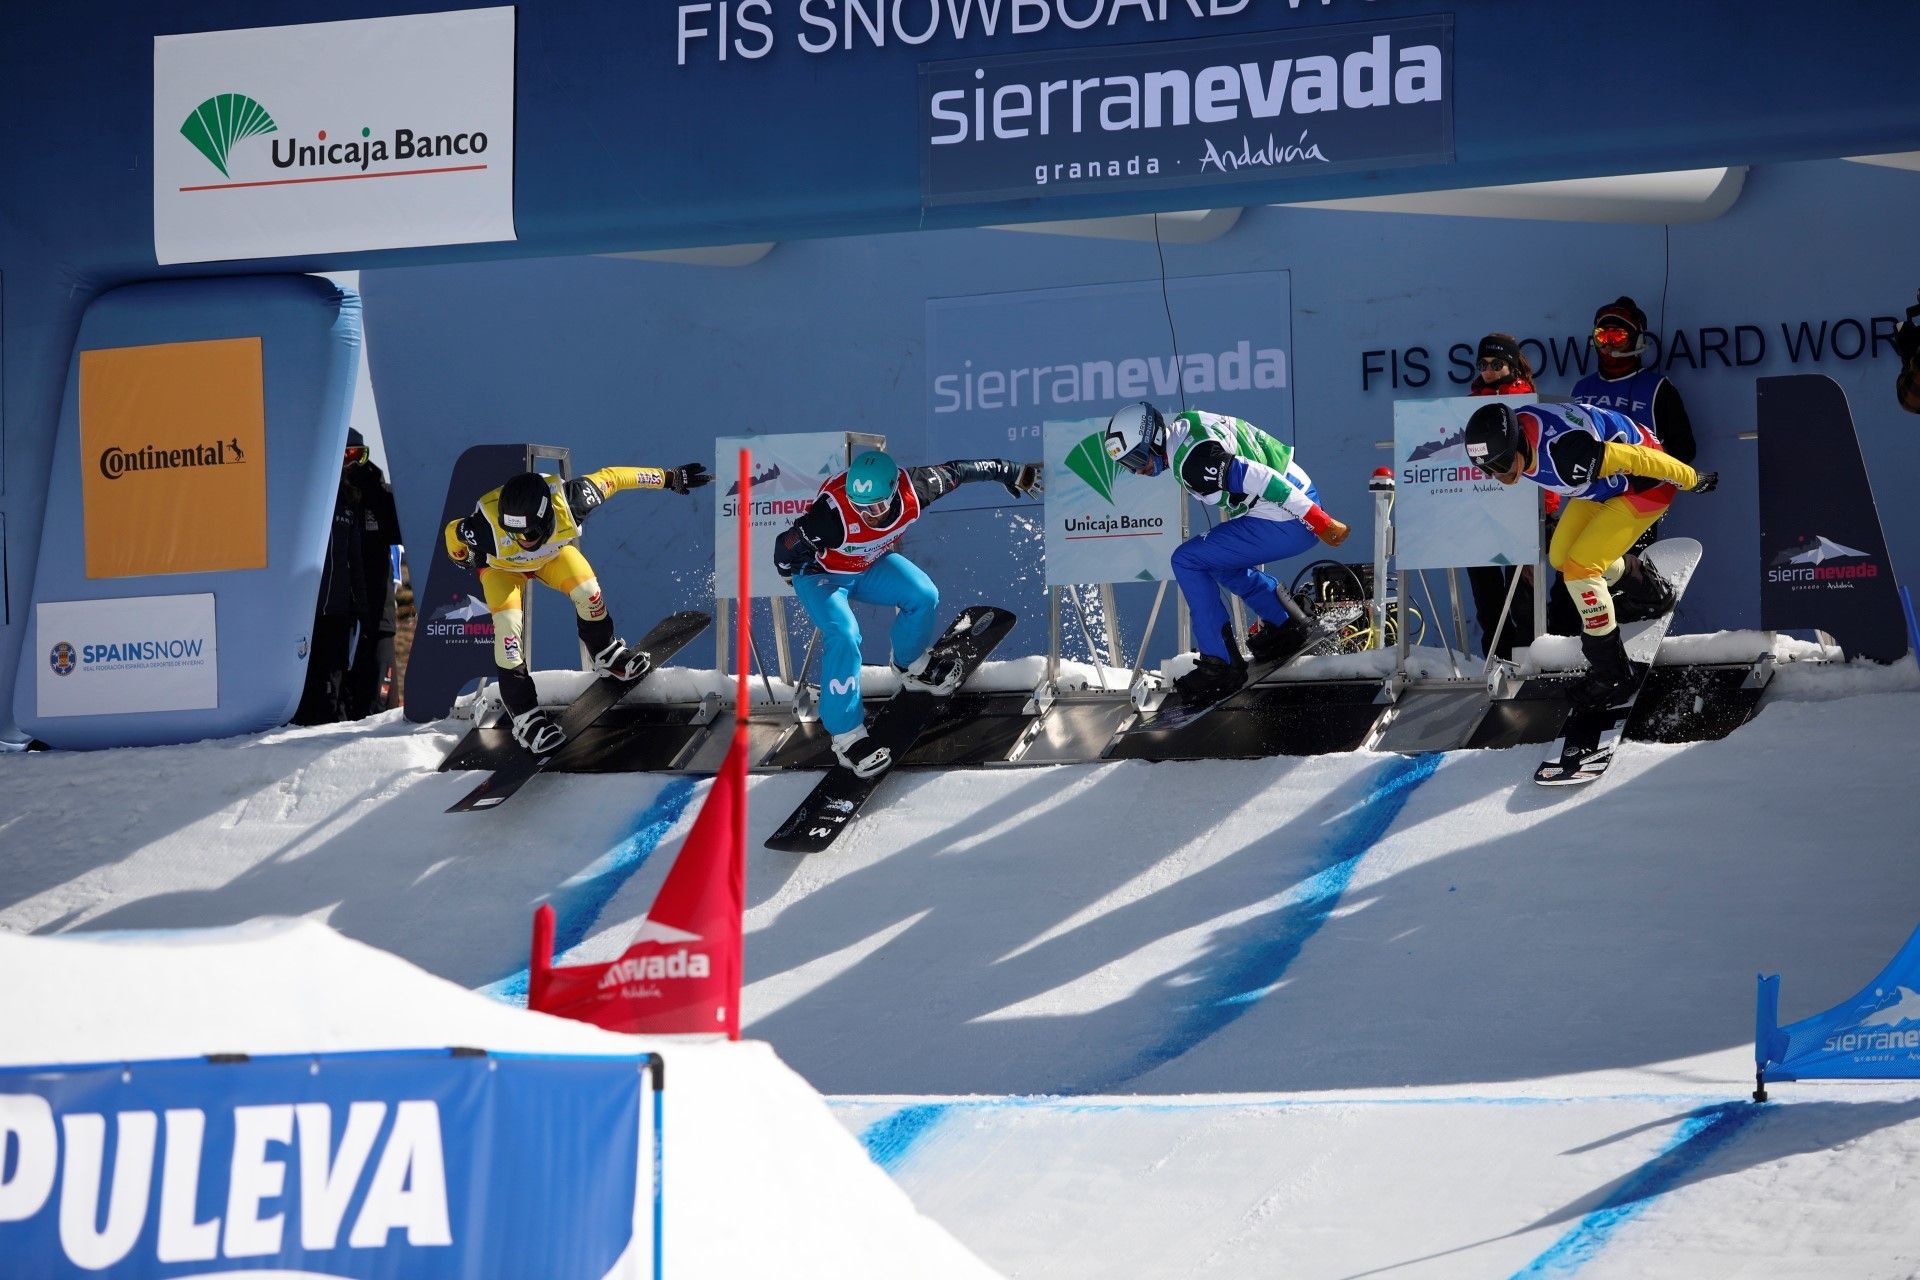 El Pirineo catalán y Sierra Nevada mantienen su apuesta por la alta competición de esquí y SBX